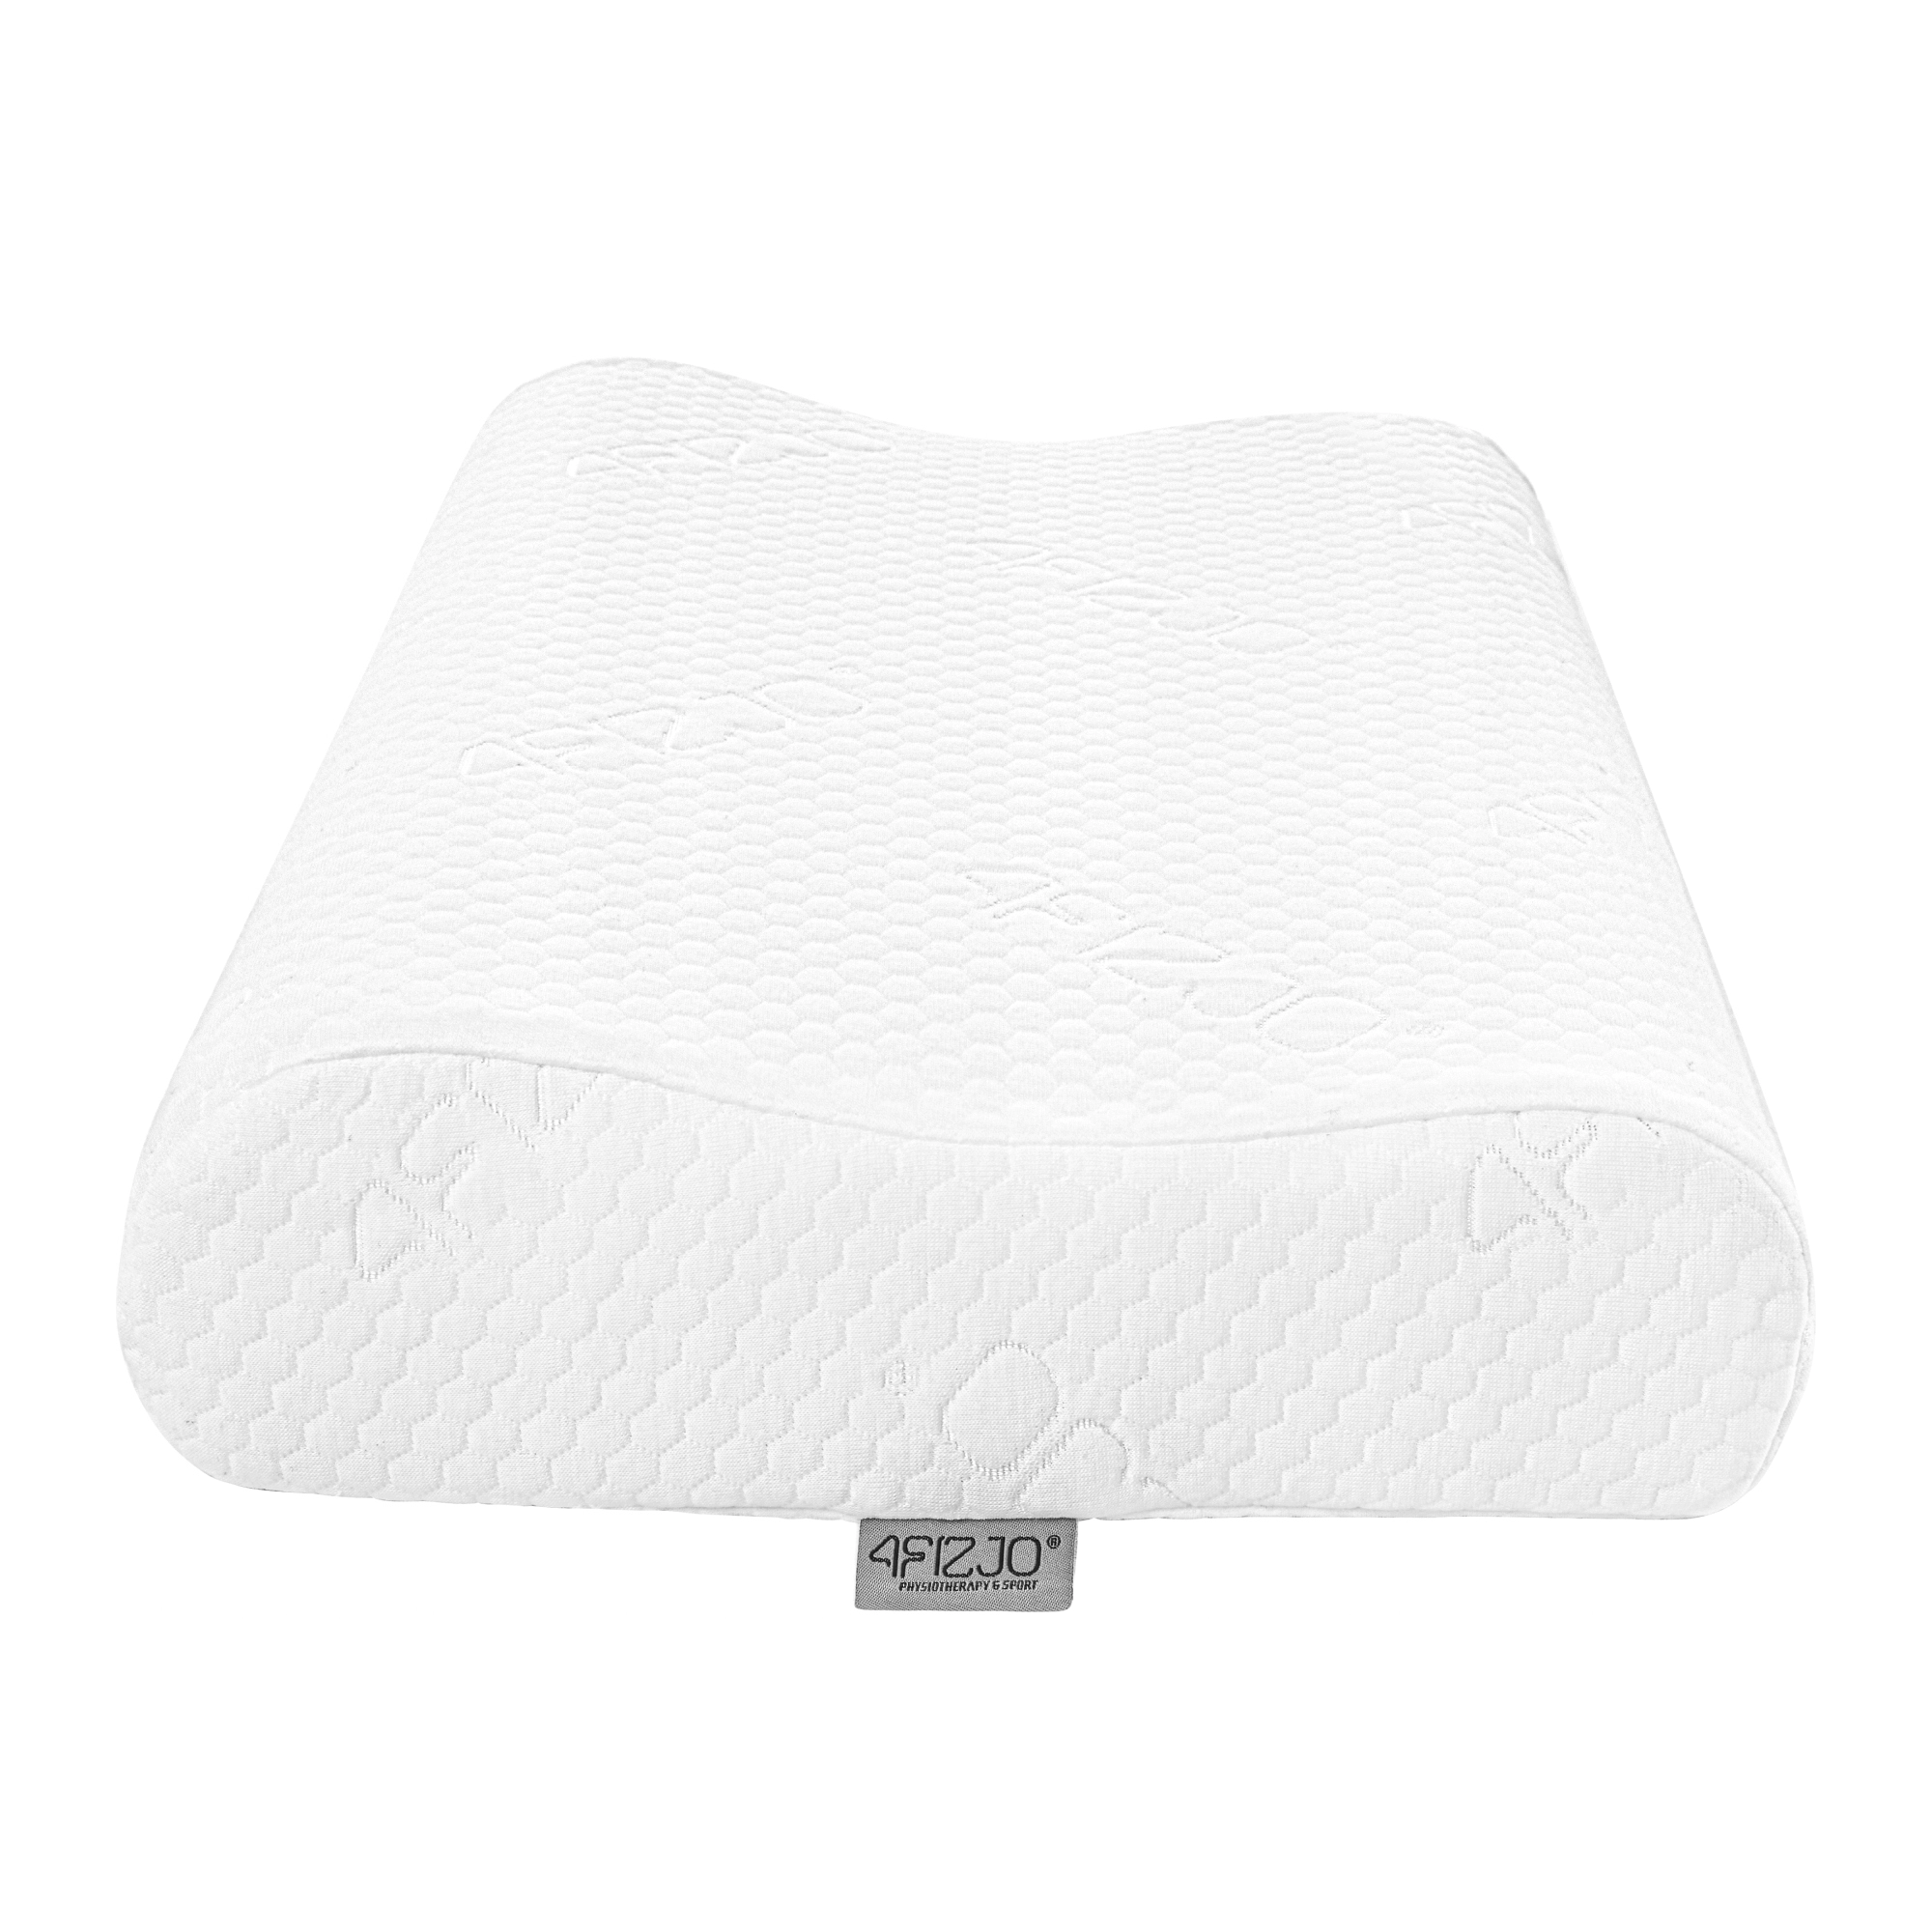 poduszka ortopedyczna do spania na boku plecach profilowana mała ergonomiczna wyprofilowana ergo